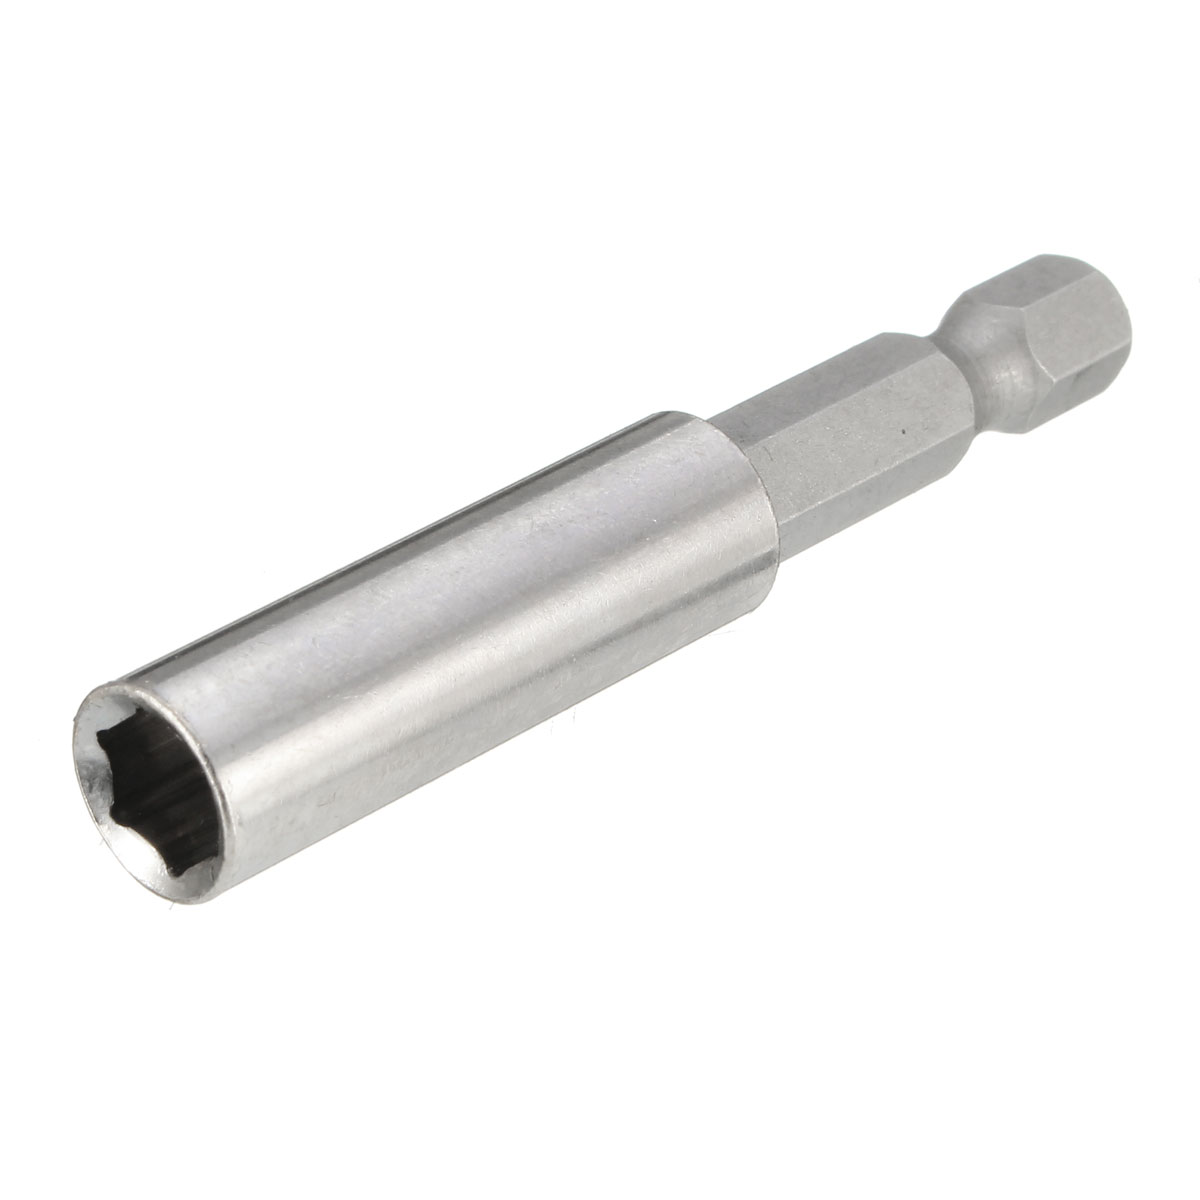 

60mm/100mm/150mm Hex Shank Magnetic Bit Holder Screwdriver Bit Extension Tip Bar